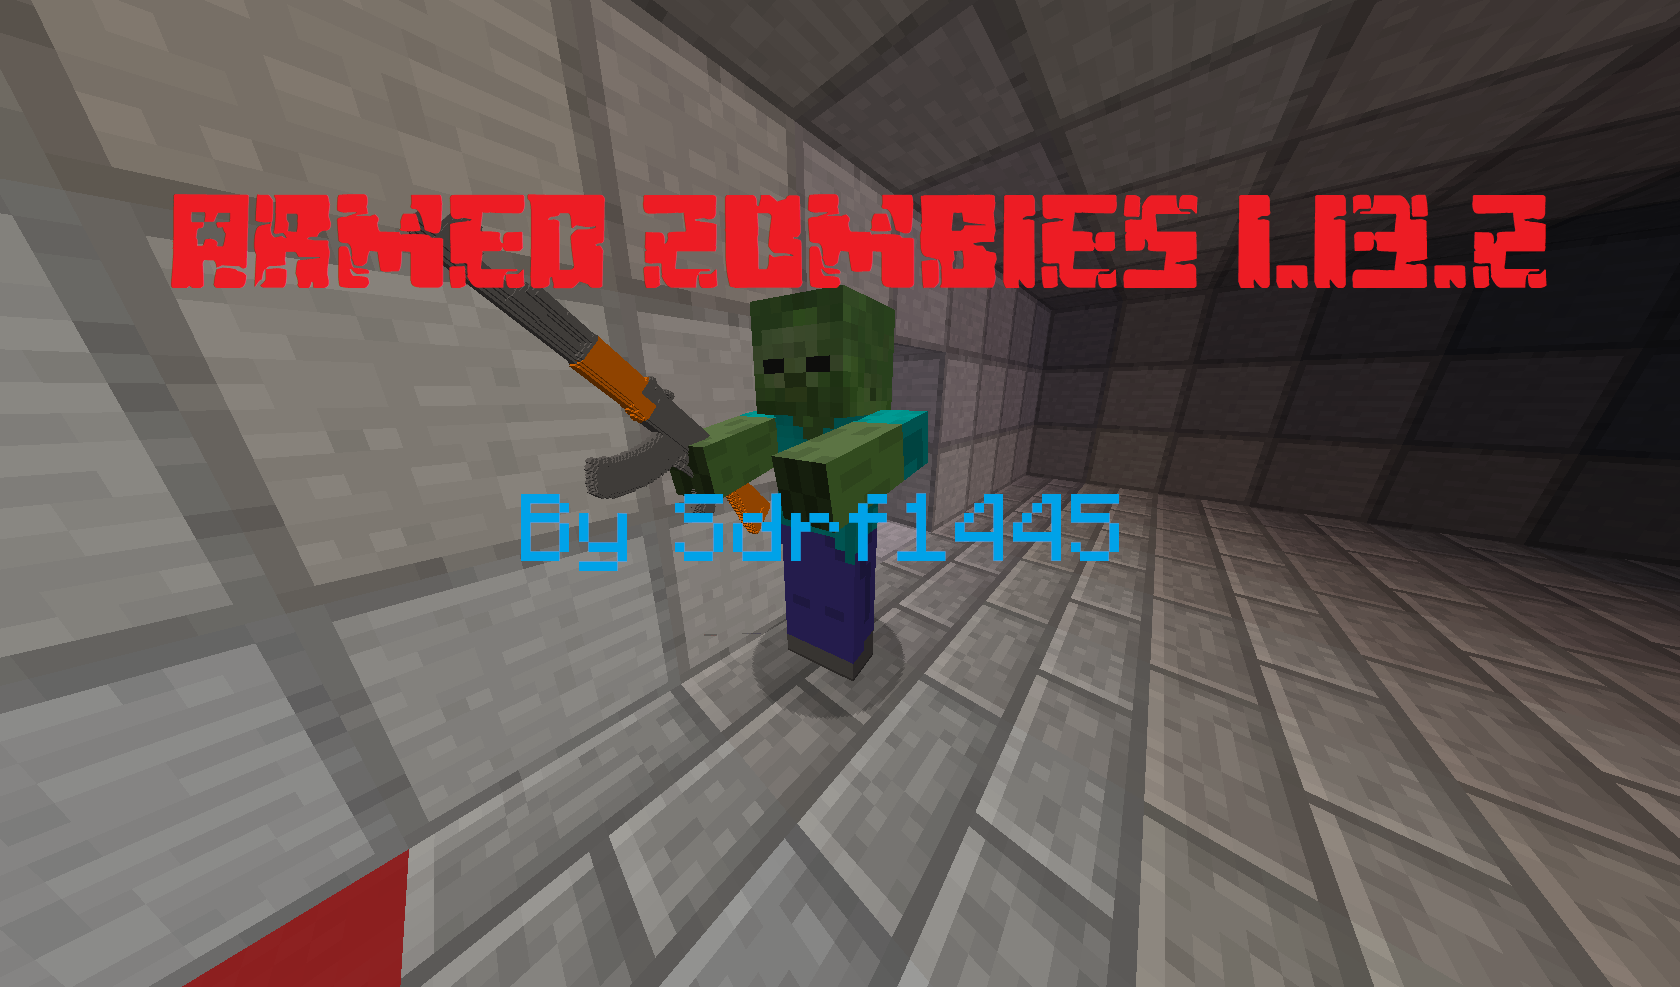 Descarca Armed Zombies pentru Minecraft 1.13.2